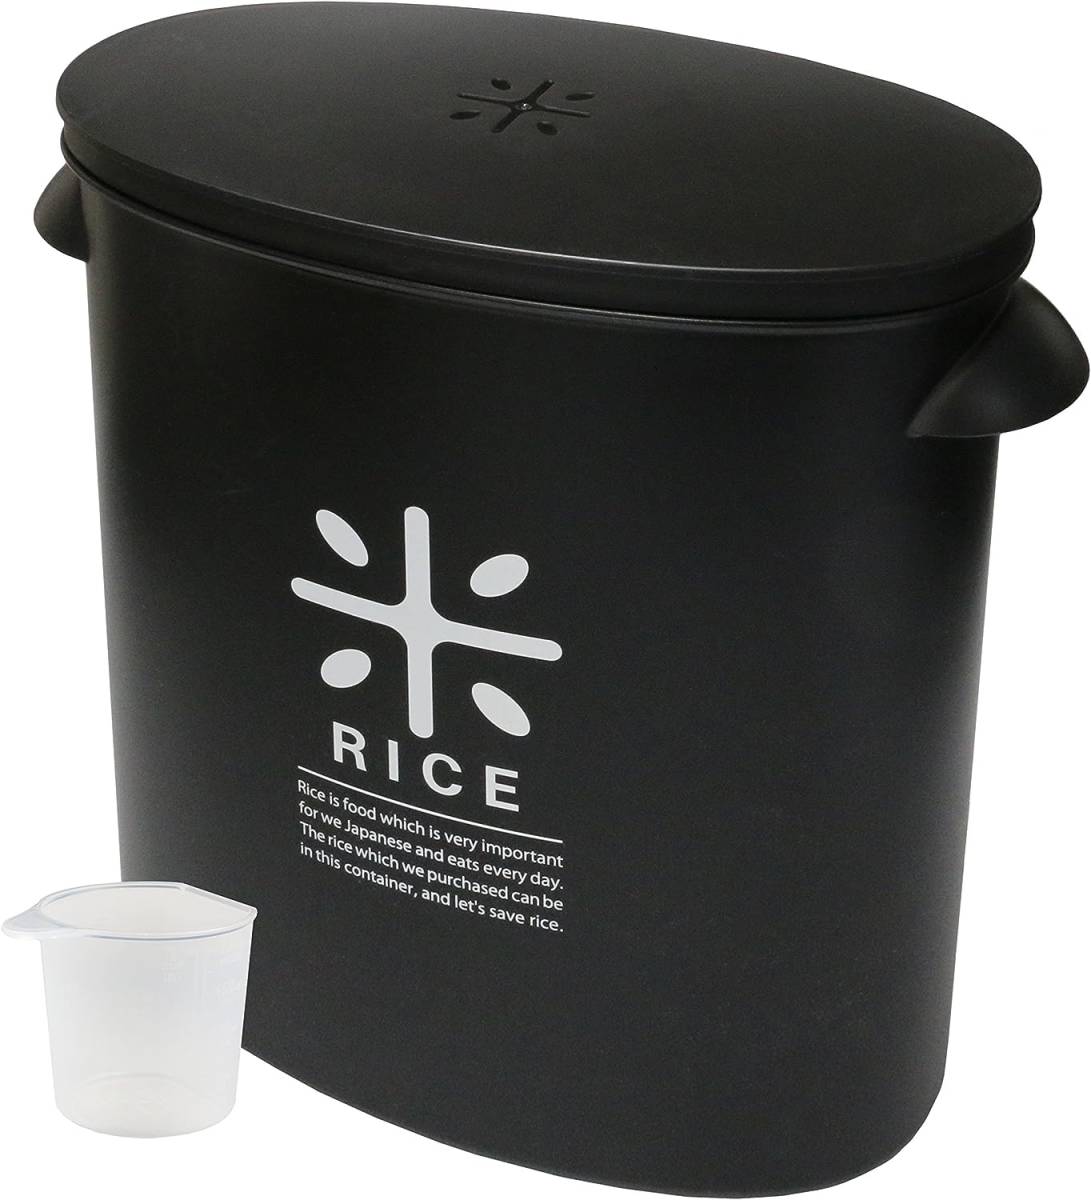 ブラック 単品 パール金属 日本製 米びつ 5kg ブラック 計量カップ付 お米 袋のまま ストック RICE HB-3434_画像1